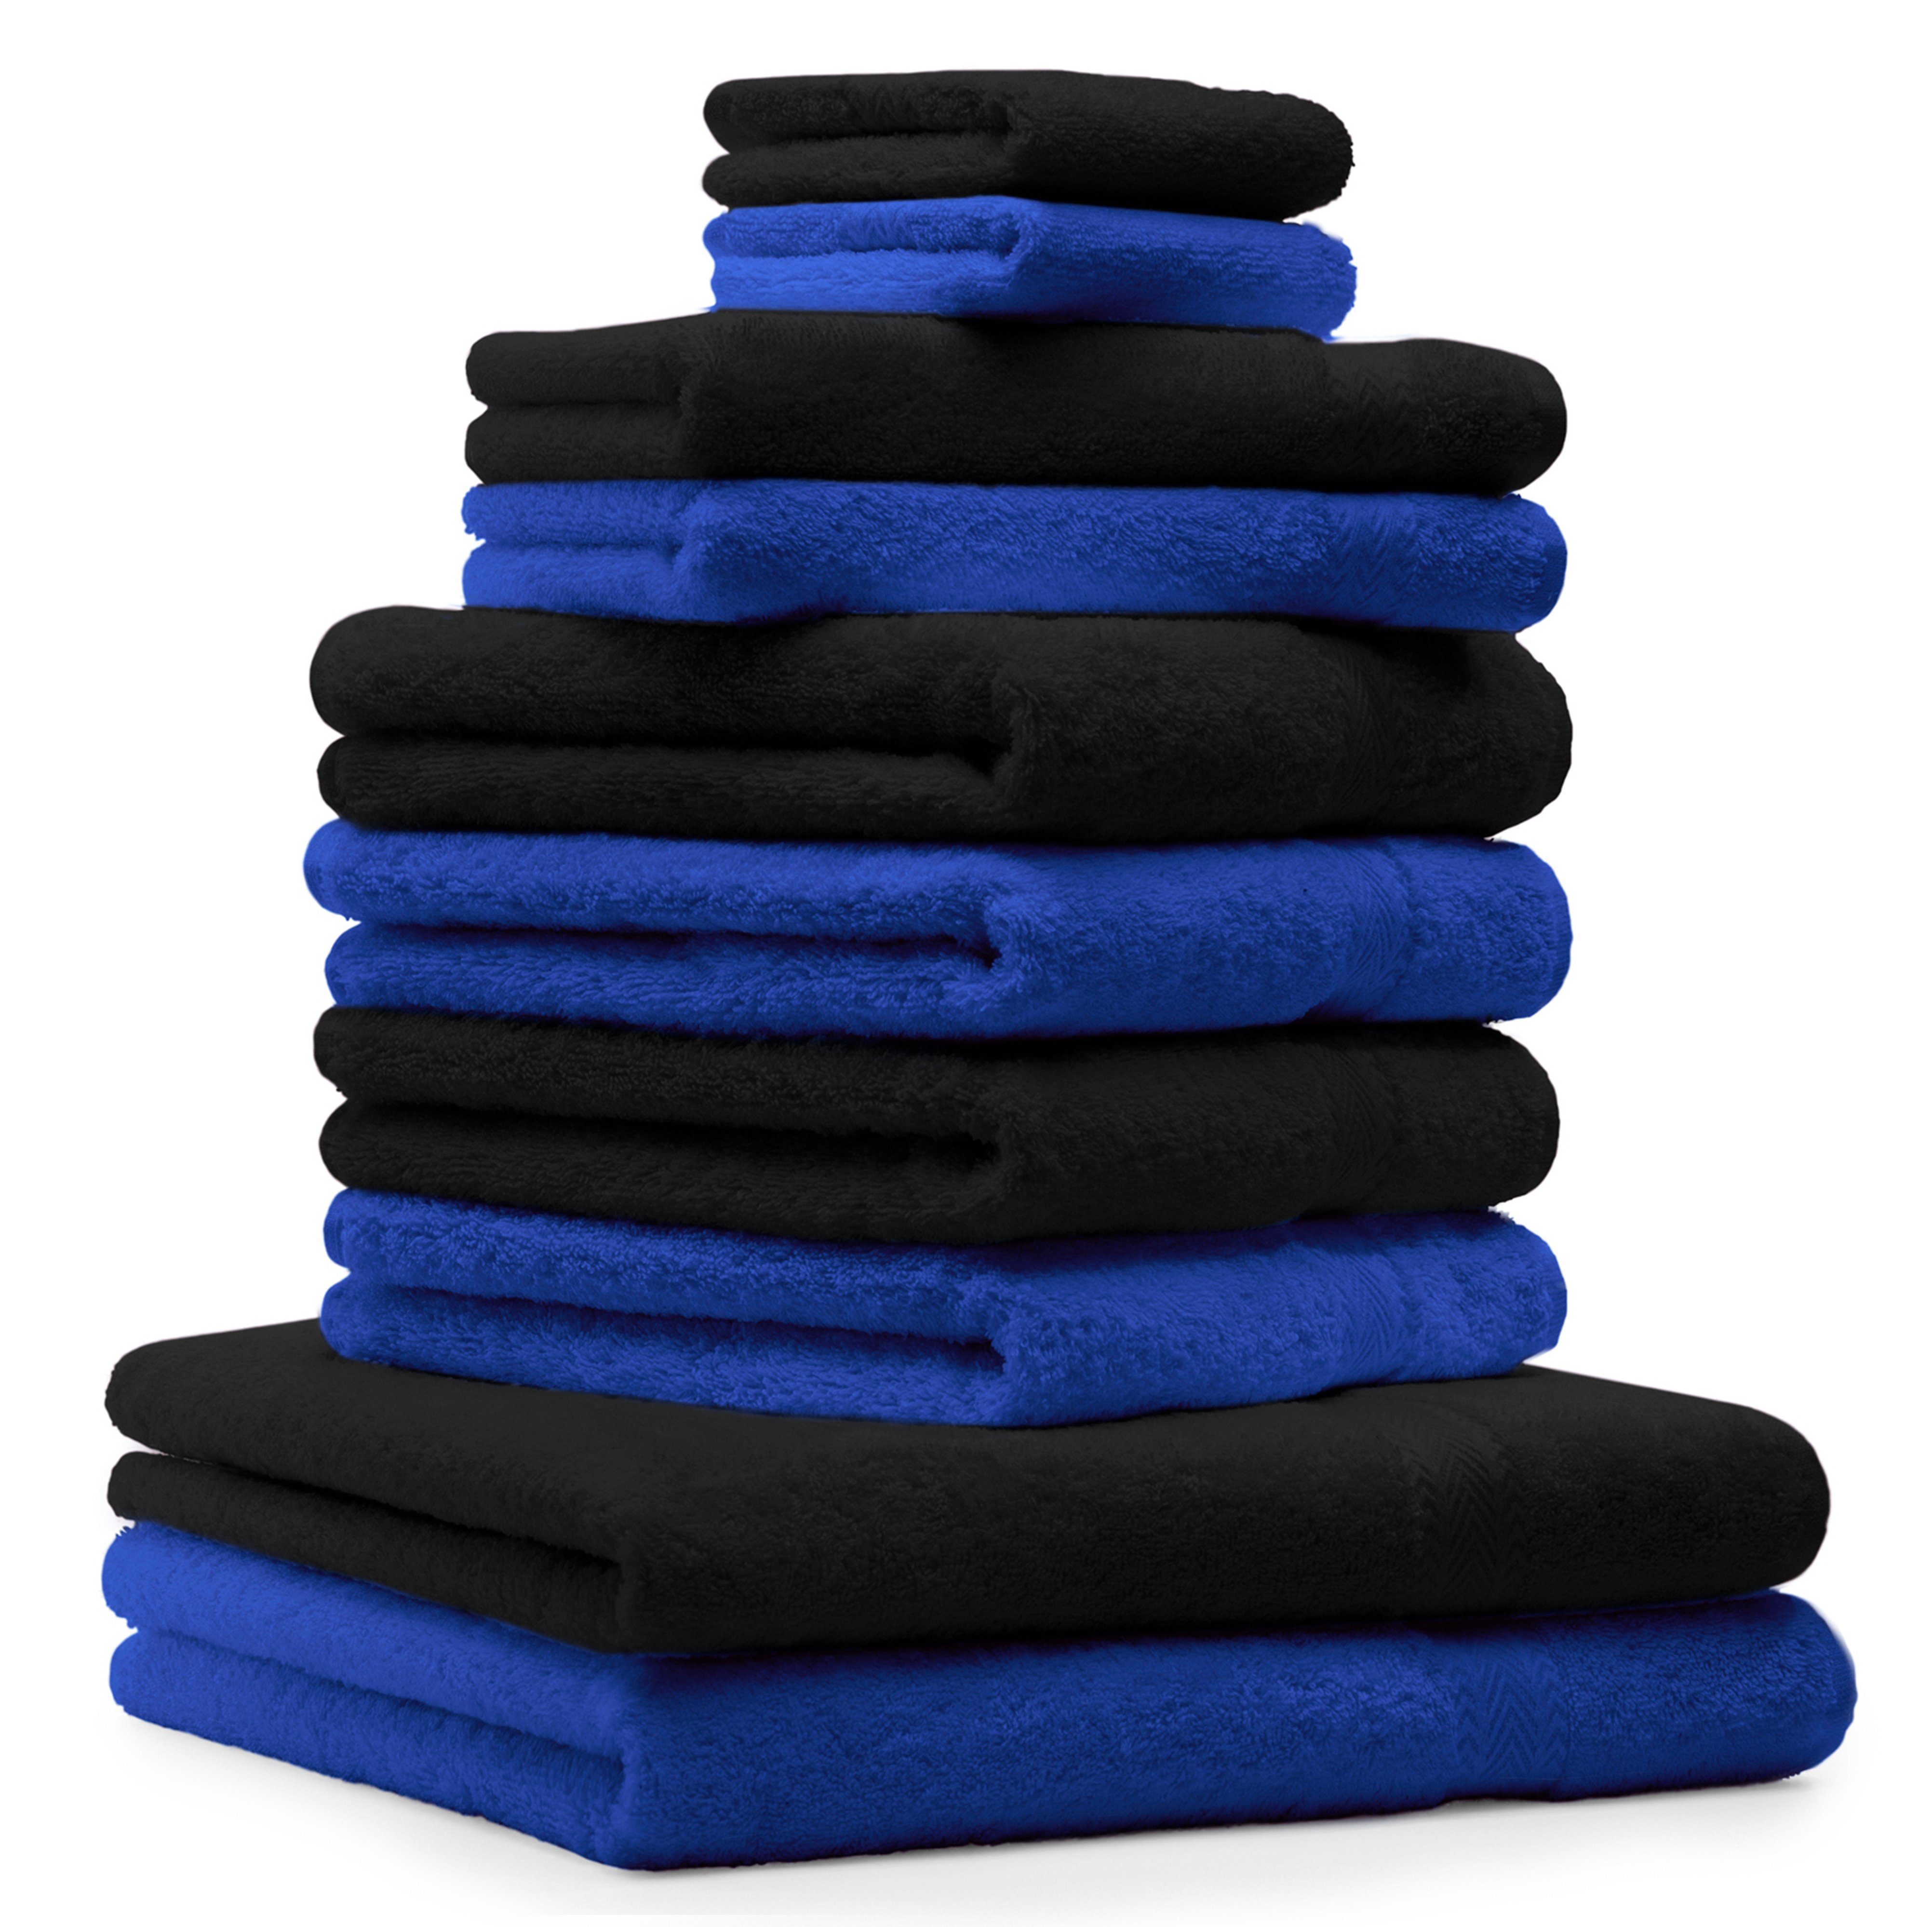 Japan-Onlineshop Betz Handtuch Set 10-TLG. Handtuch-Set Classic Baumwolle royalblau schwarz, und Farbe 100